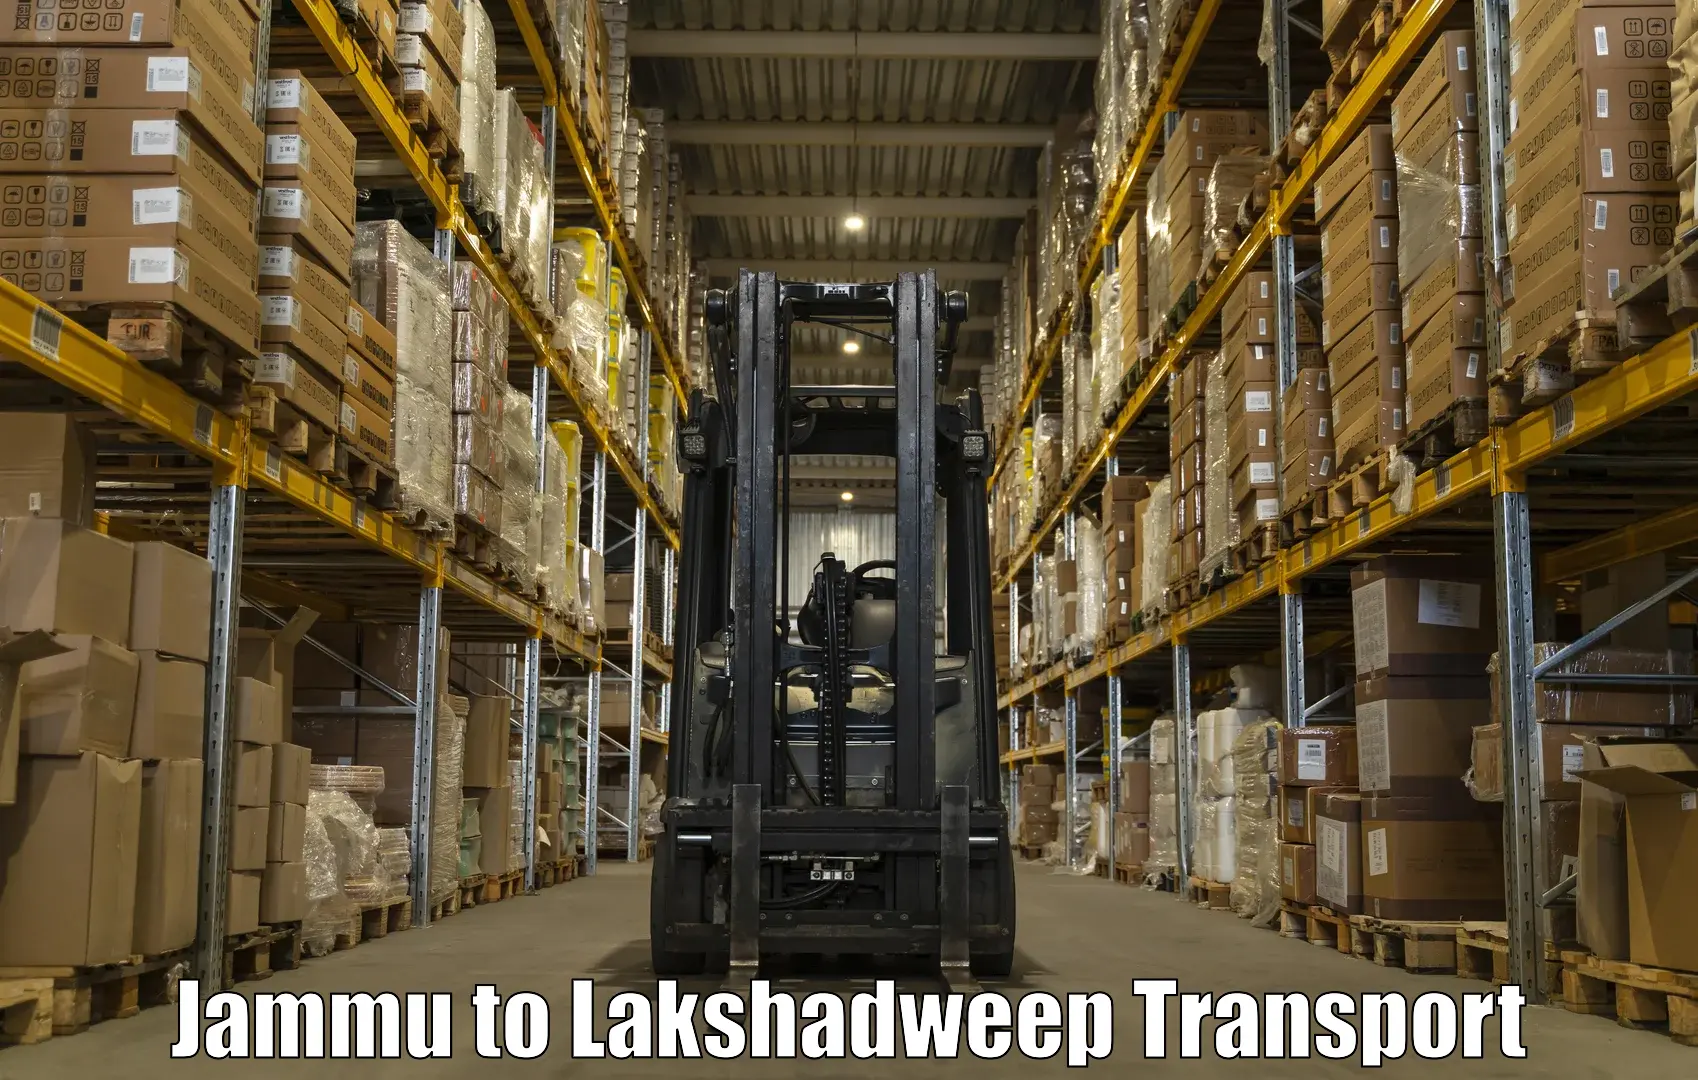 Furniture transport service Jammu to Lakshadweep